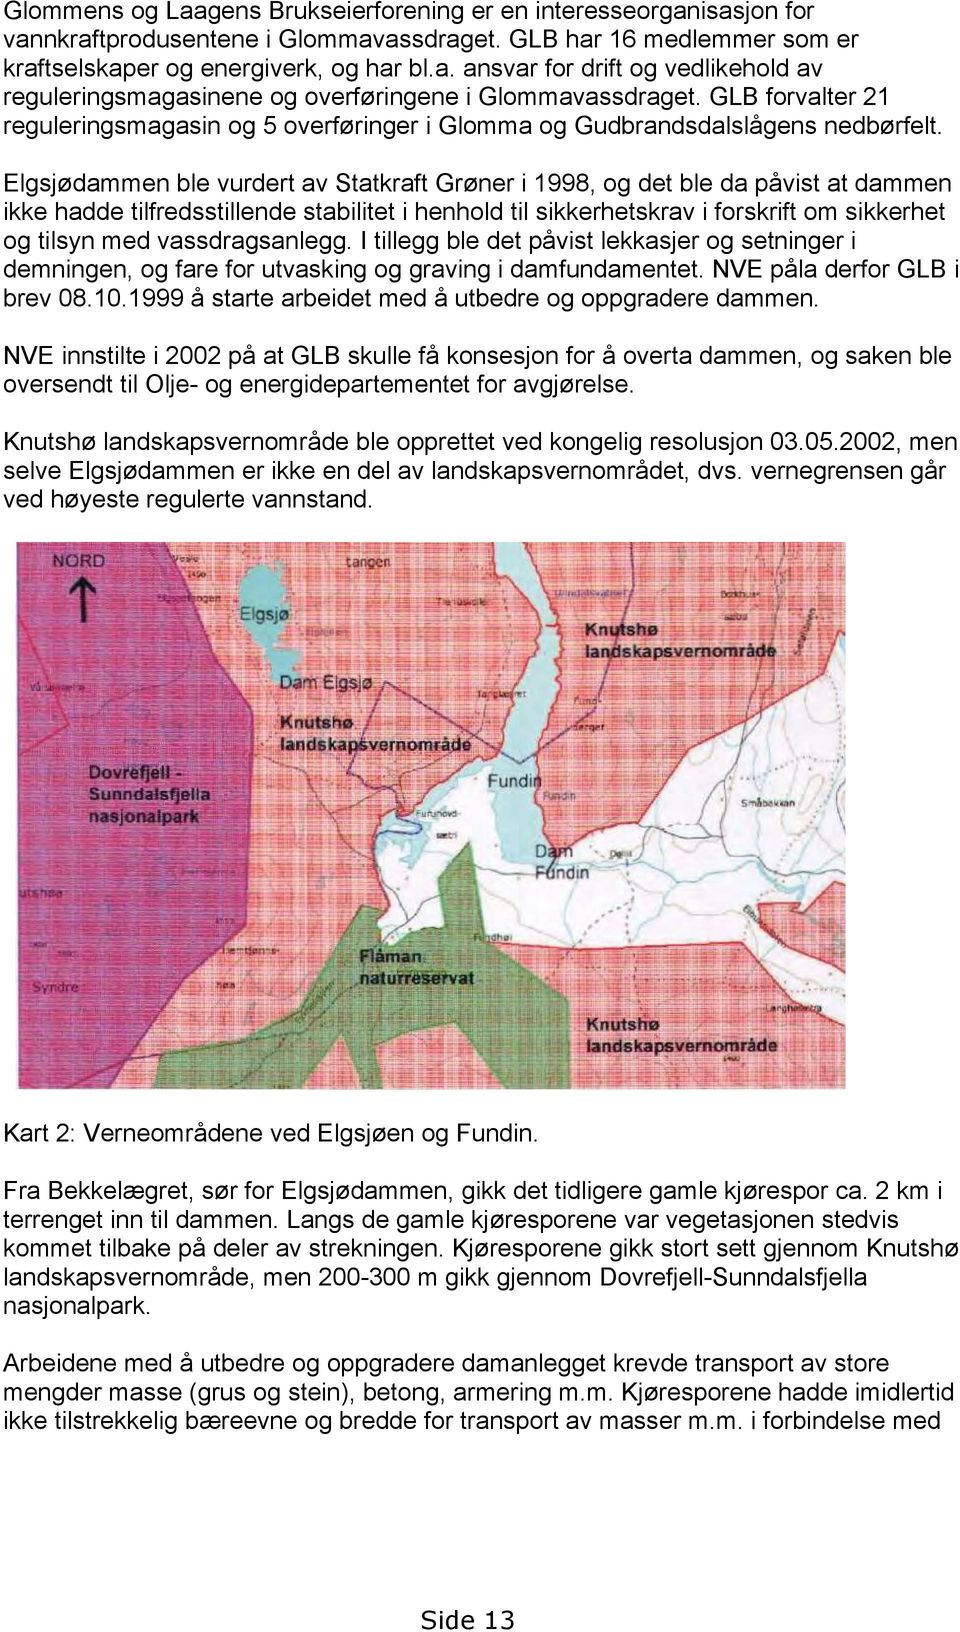 Elgsjødammen ble vurdert av Statkraft Grøner i 1998, og det ble da påvist at dammen ikke hadde tilfredsstillende stabilitet i henhold til sikkerhetskrav i forskrift om sikkerhet og tilsyn med